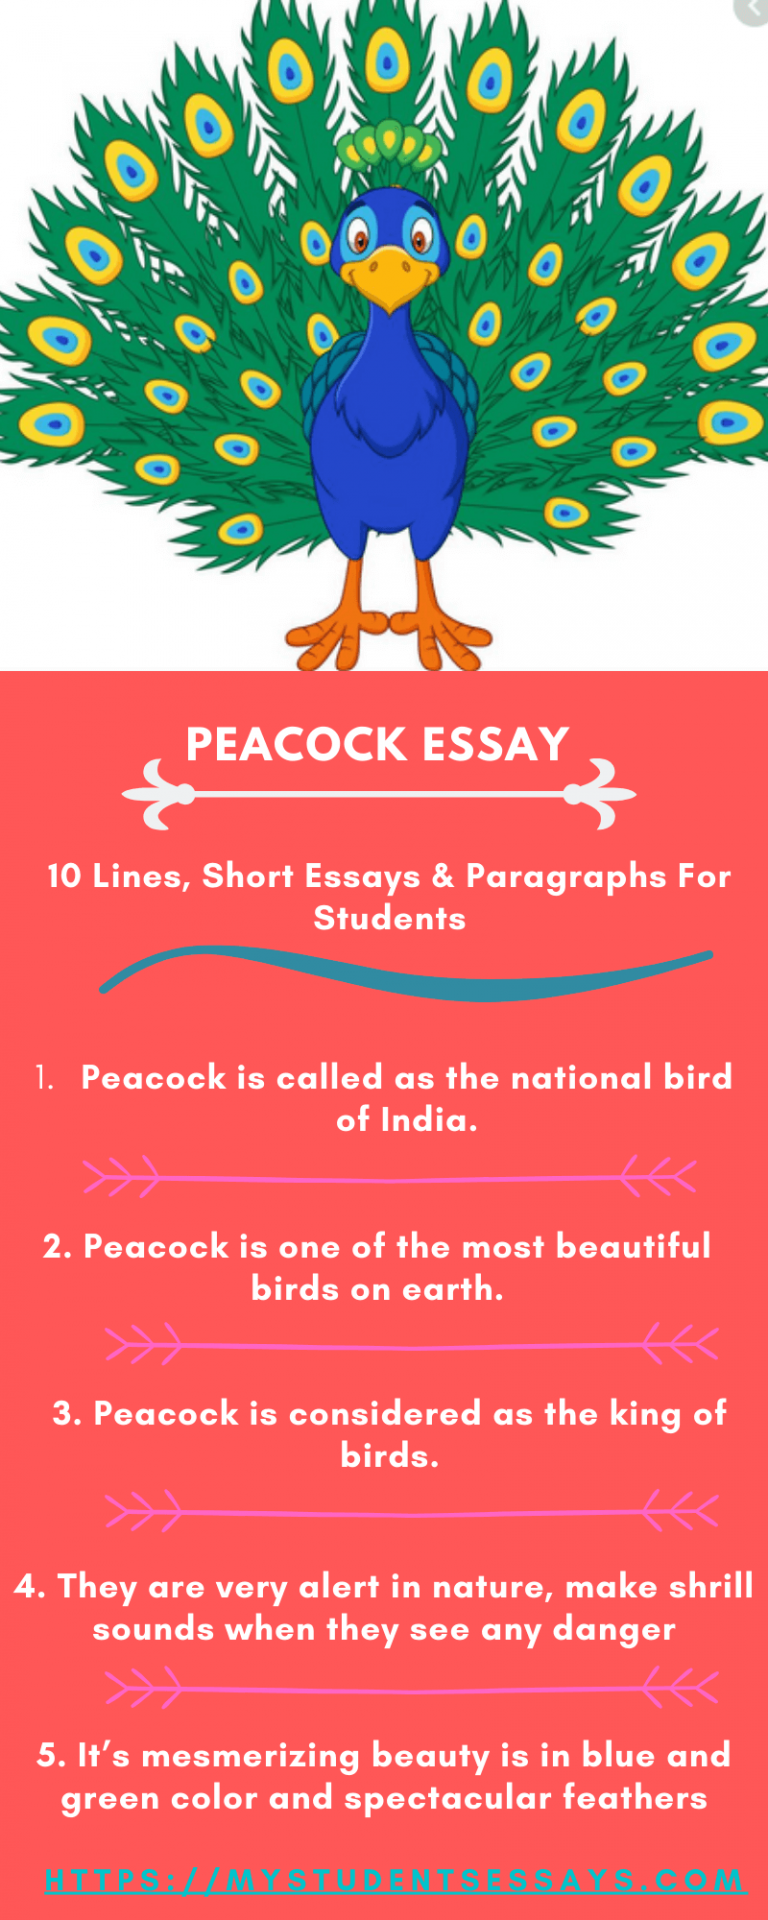 an essay on peacock bird